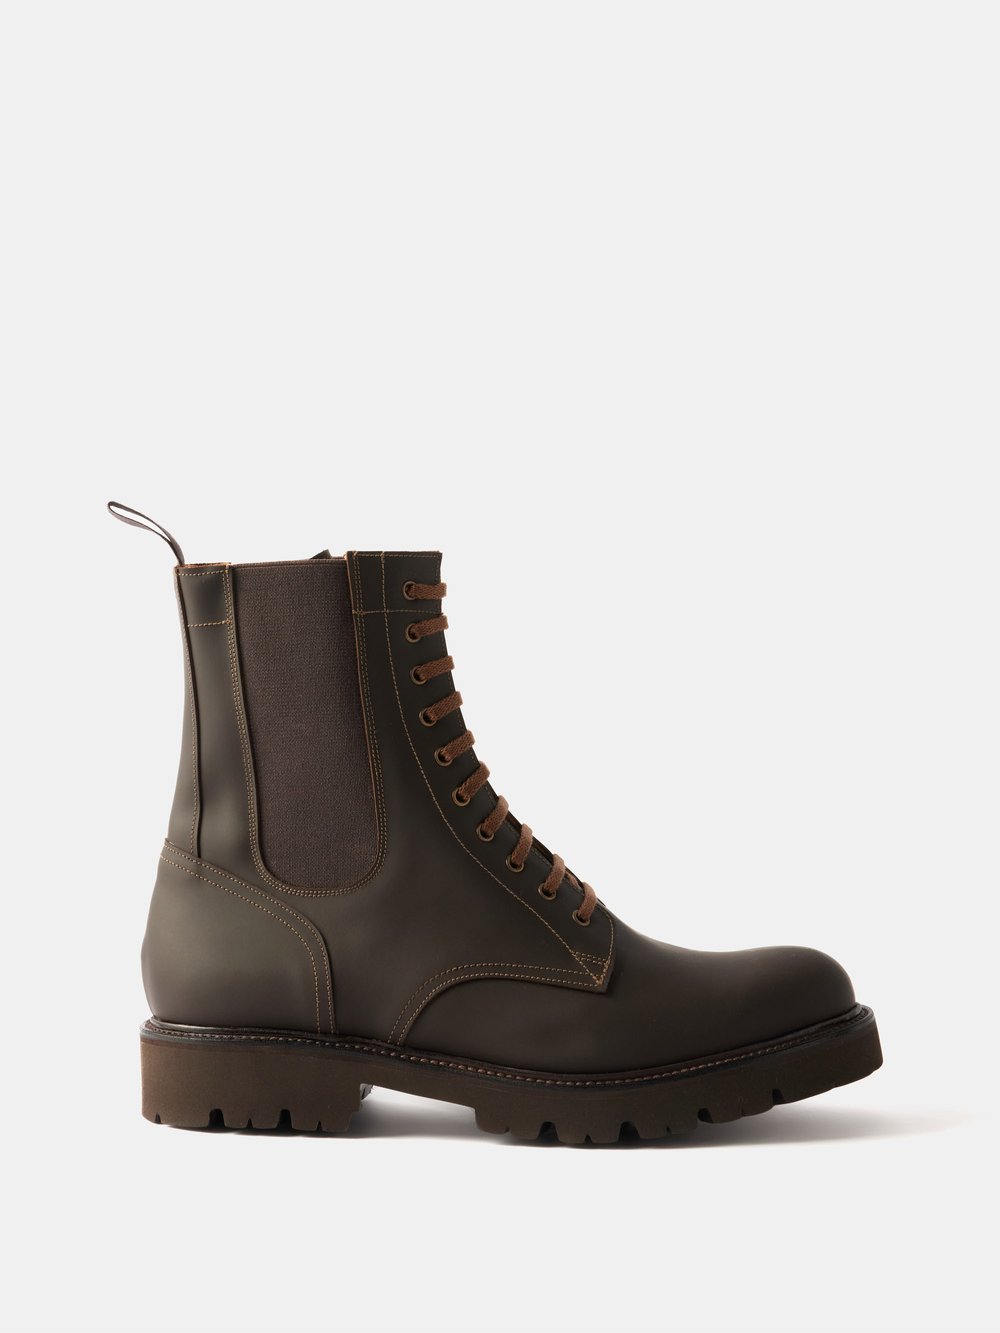 Кожаные ботинки buckley на рифленой подошве Grenson, коричневый кроссовки grenson zapatillas tan